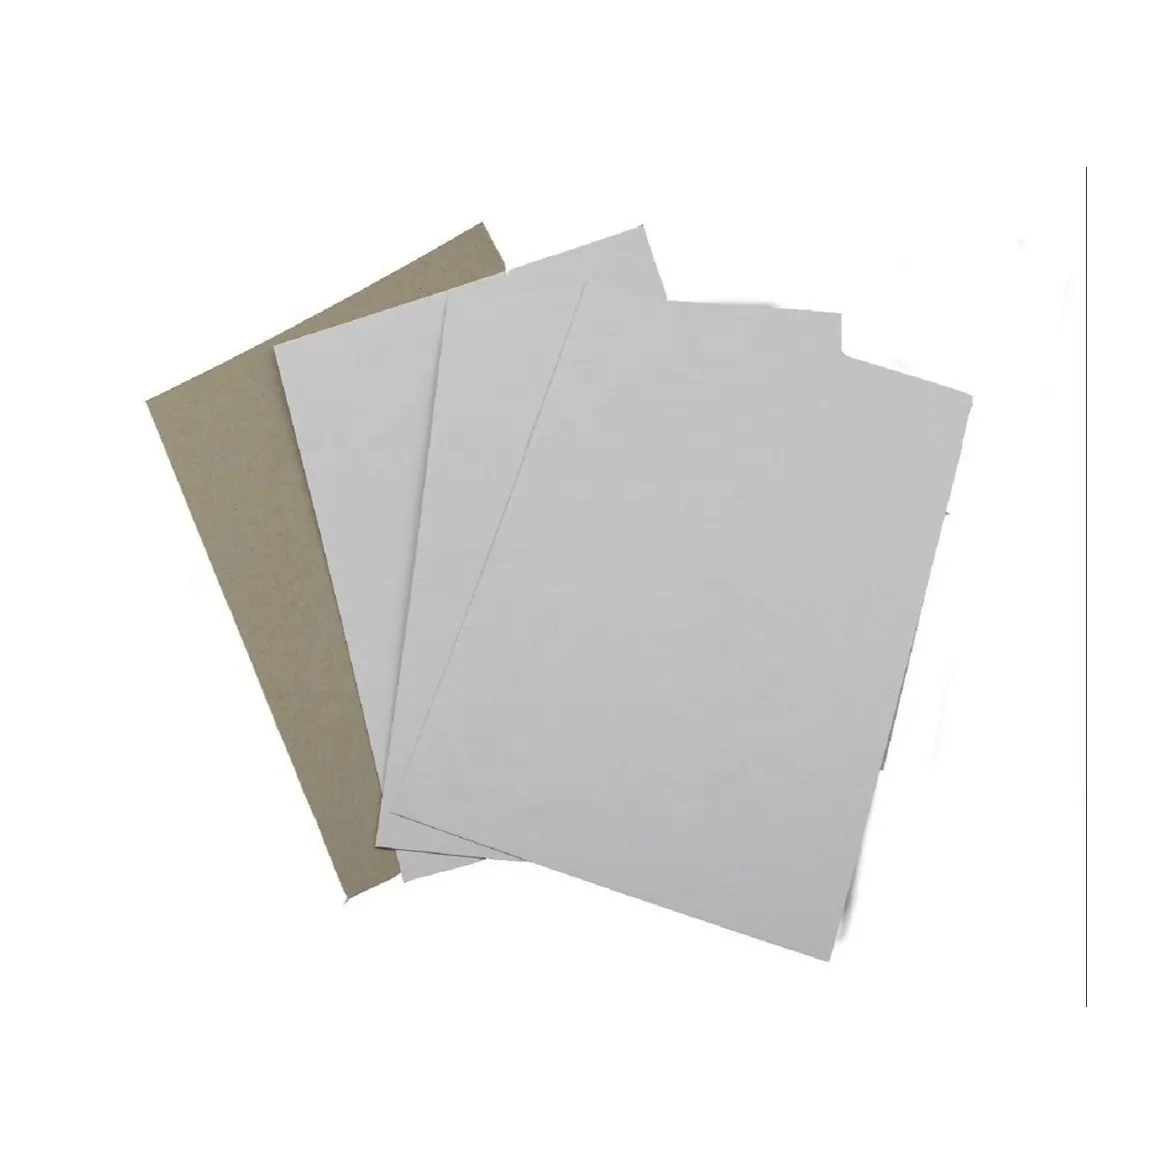 איכות גבוהה נייר לוח דופלקס בחזרה 2 מ "מ קרטון כפול אפור 70*100 ס" מ נייר מצופה לבן דופלקס